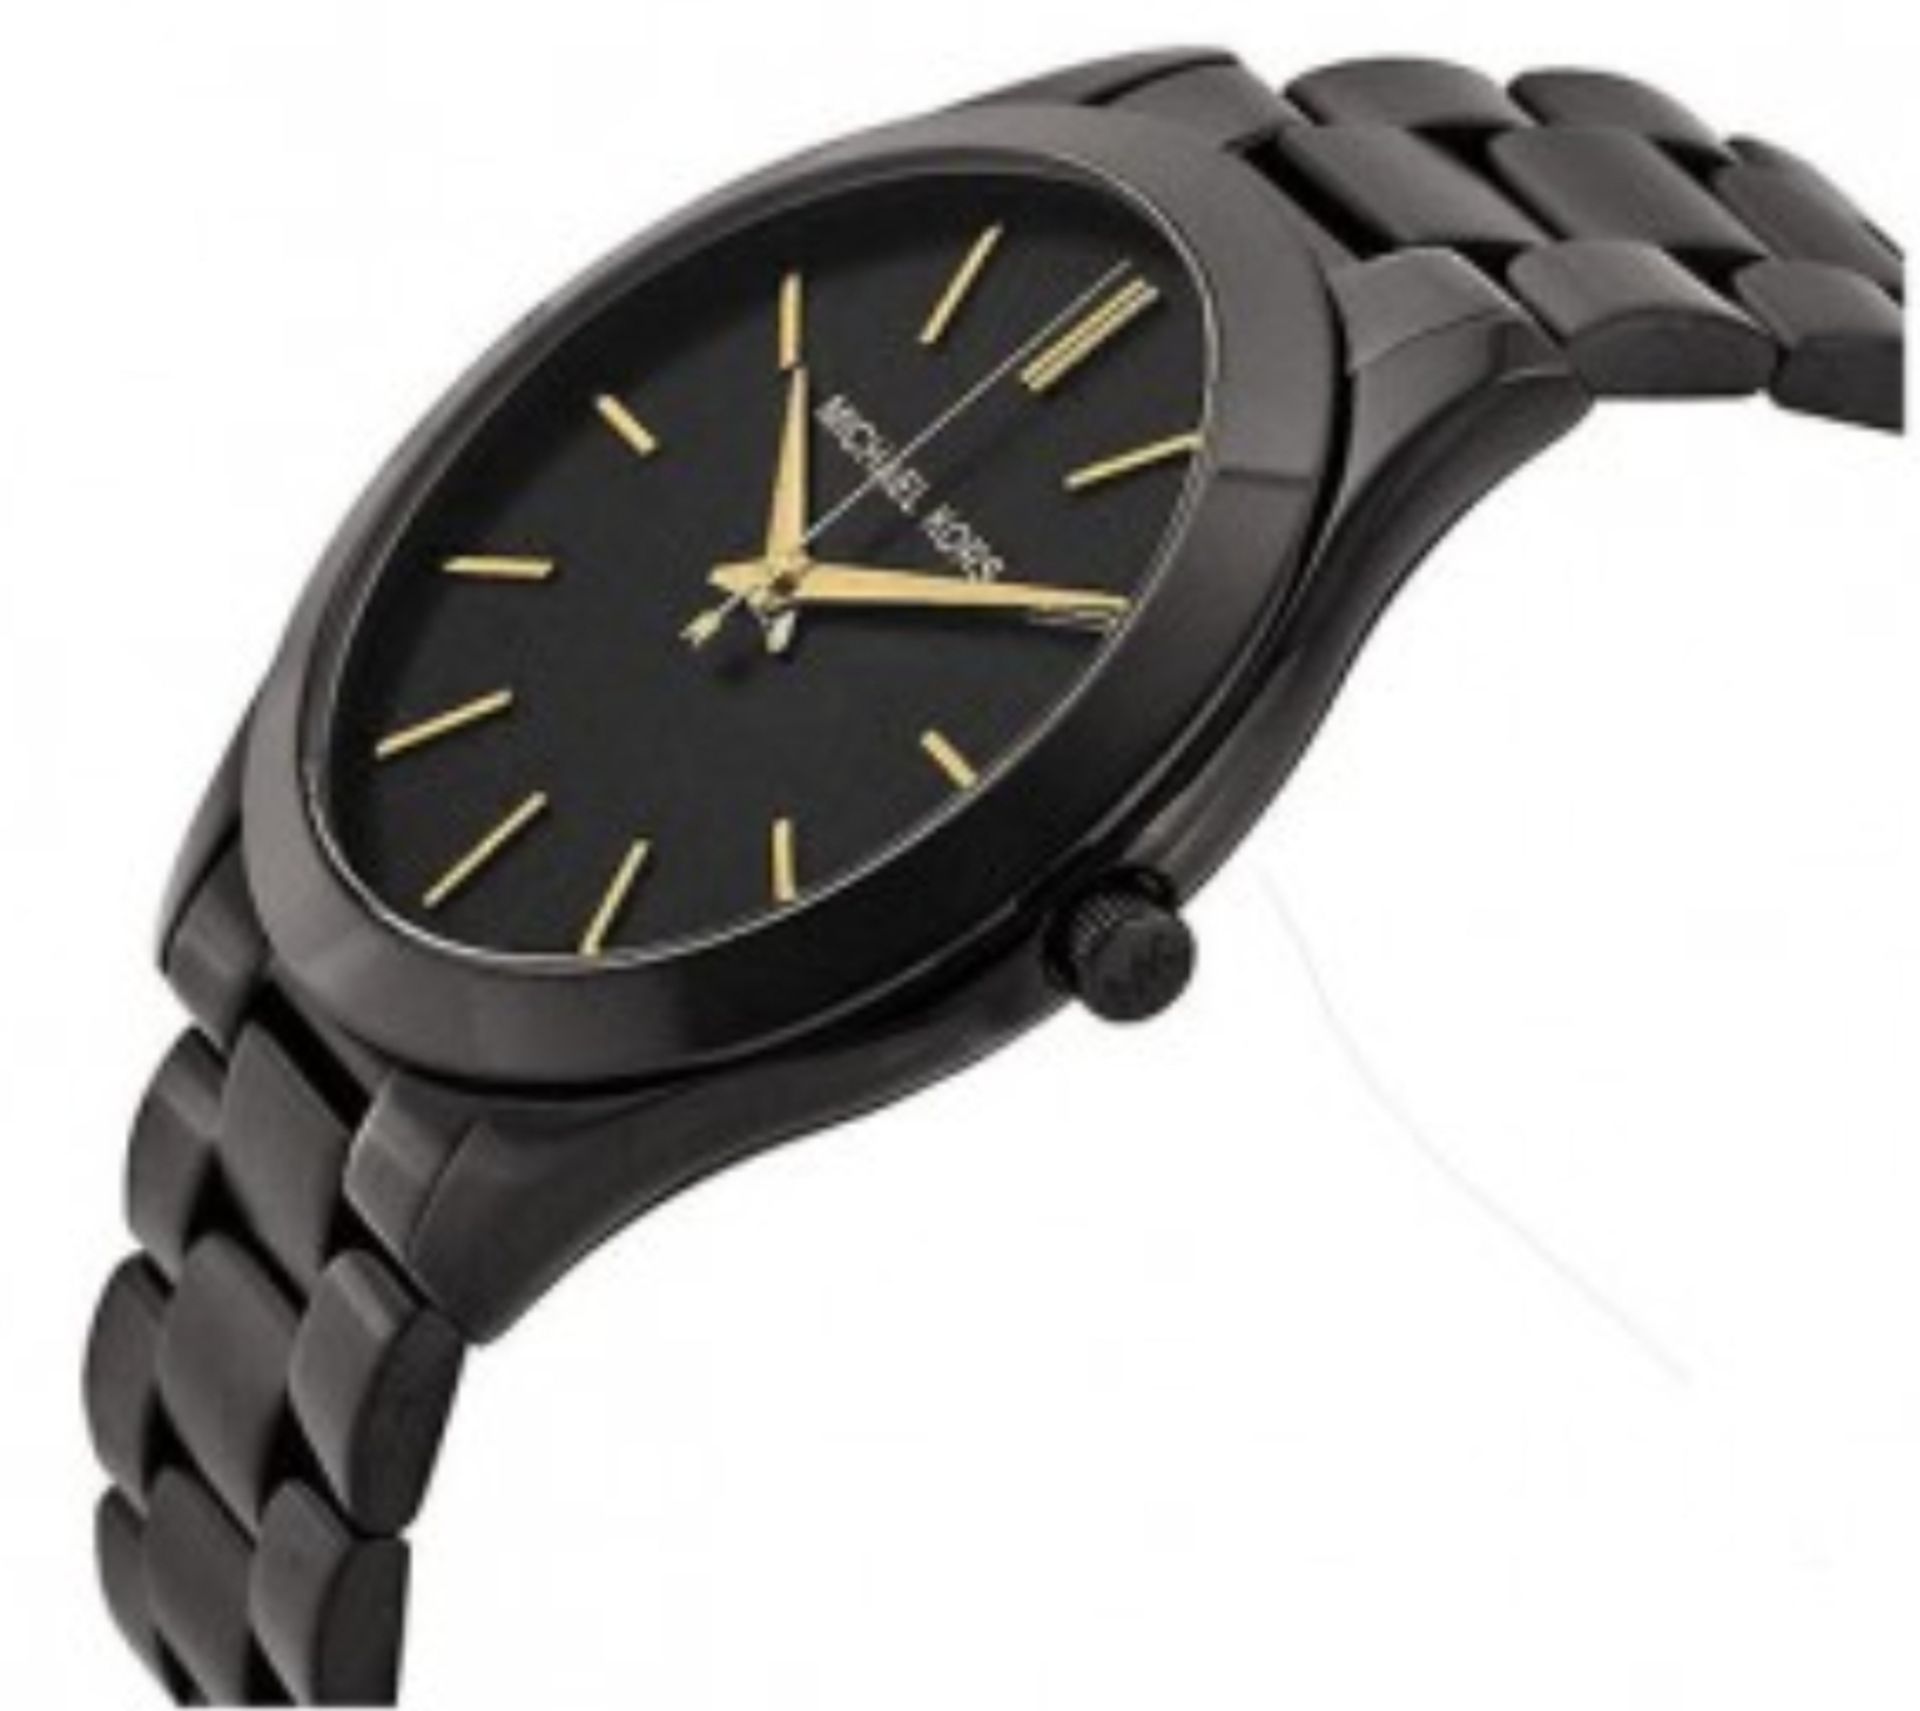 Michael Kors MK3221 Ladies Slim Runway Black Bracelet Quartz Watch - Image 2 of 6